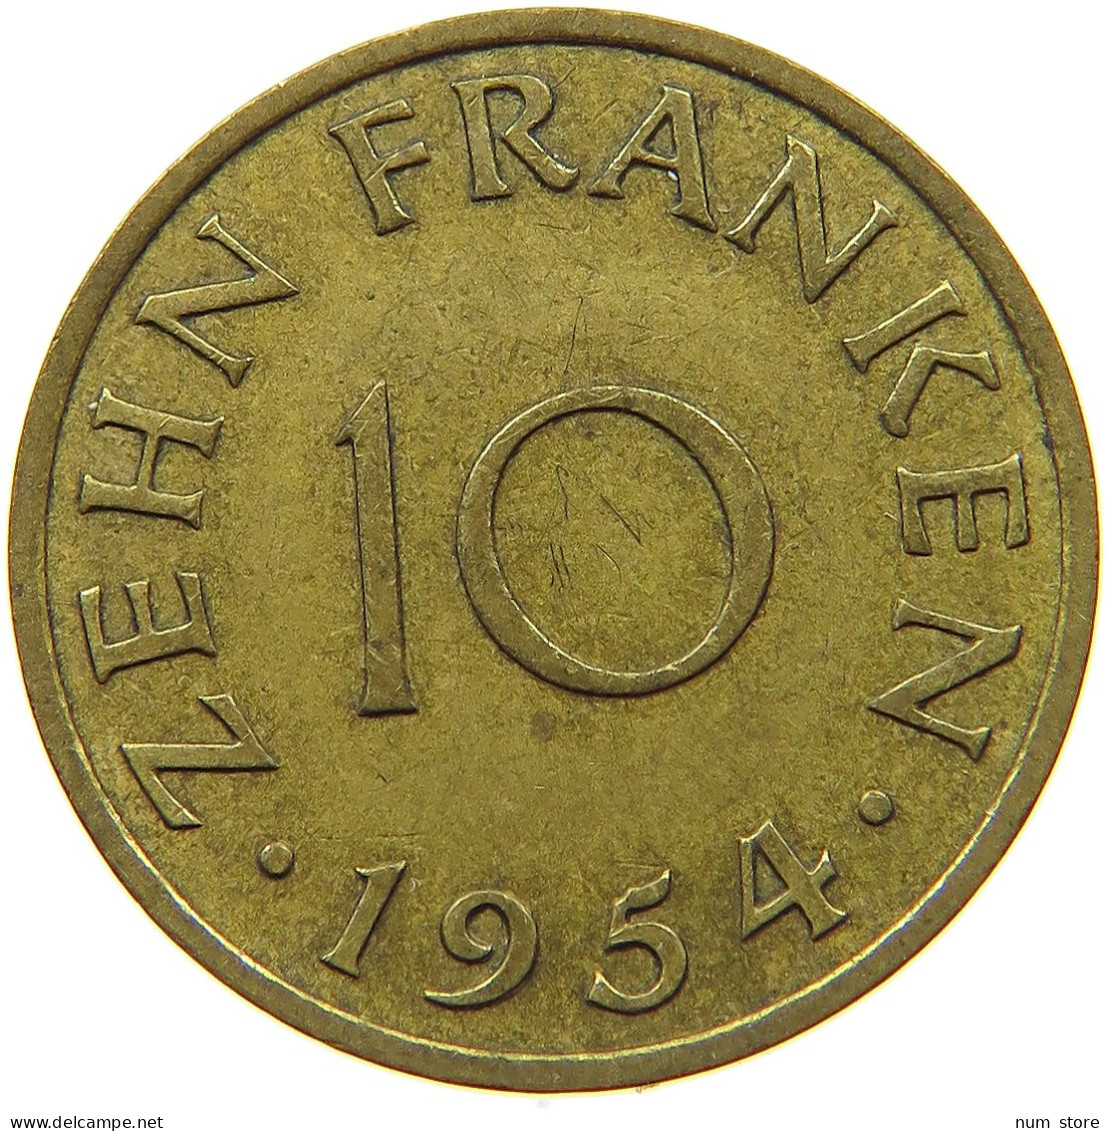 GERMANY WEST 10 FRANKEN 1954 SAARLAND #s071 0199 - 10 Franken